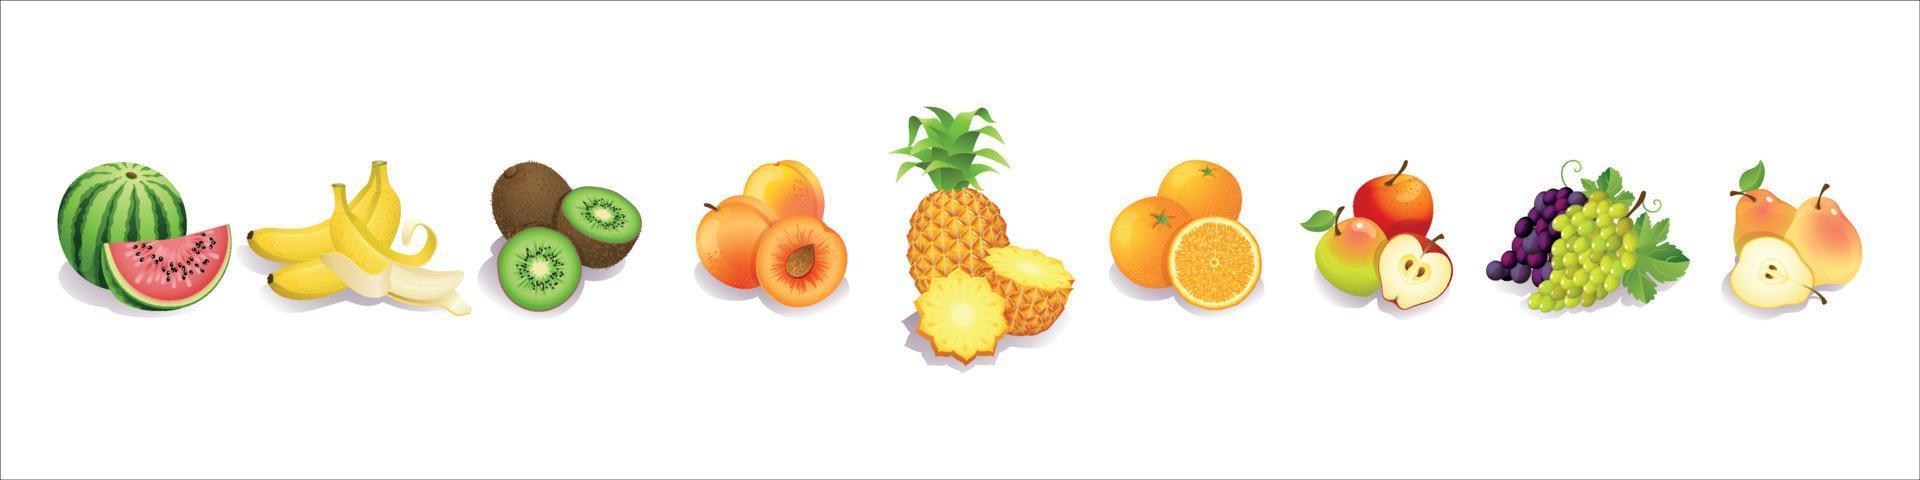 conjunto de frutas realista vetor